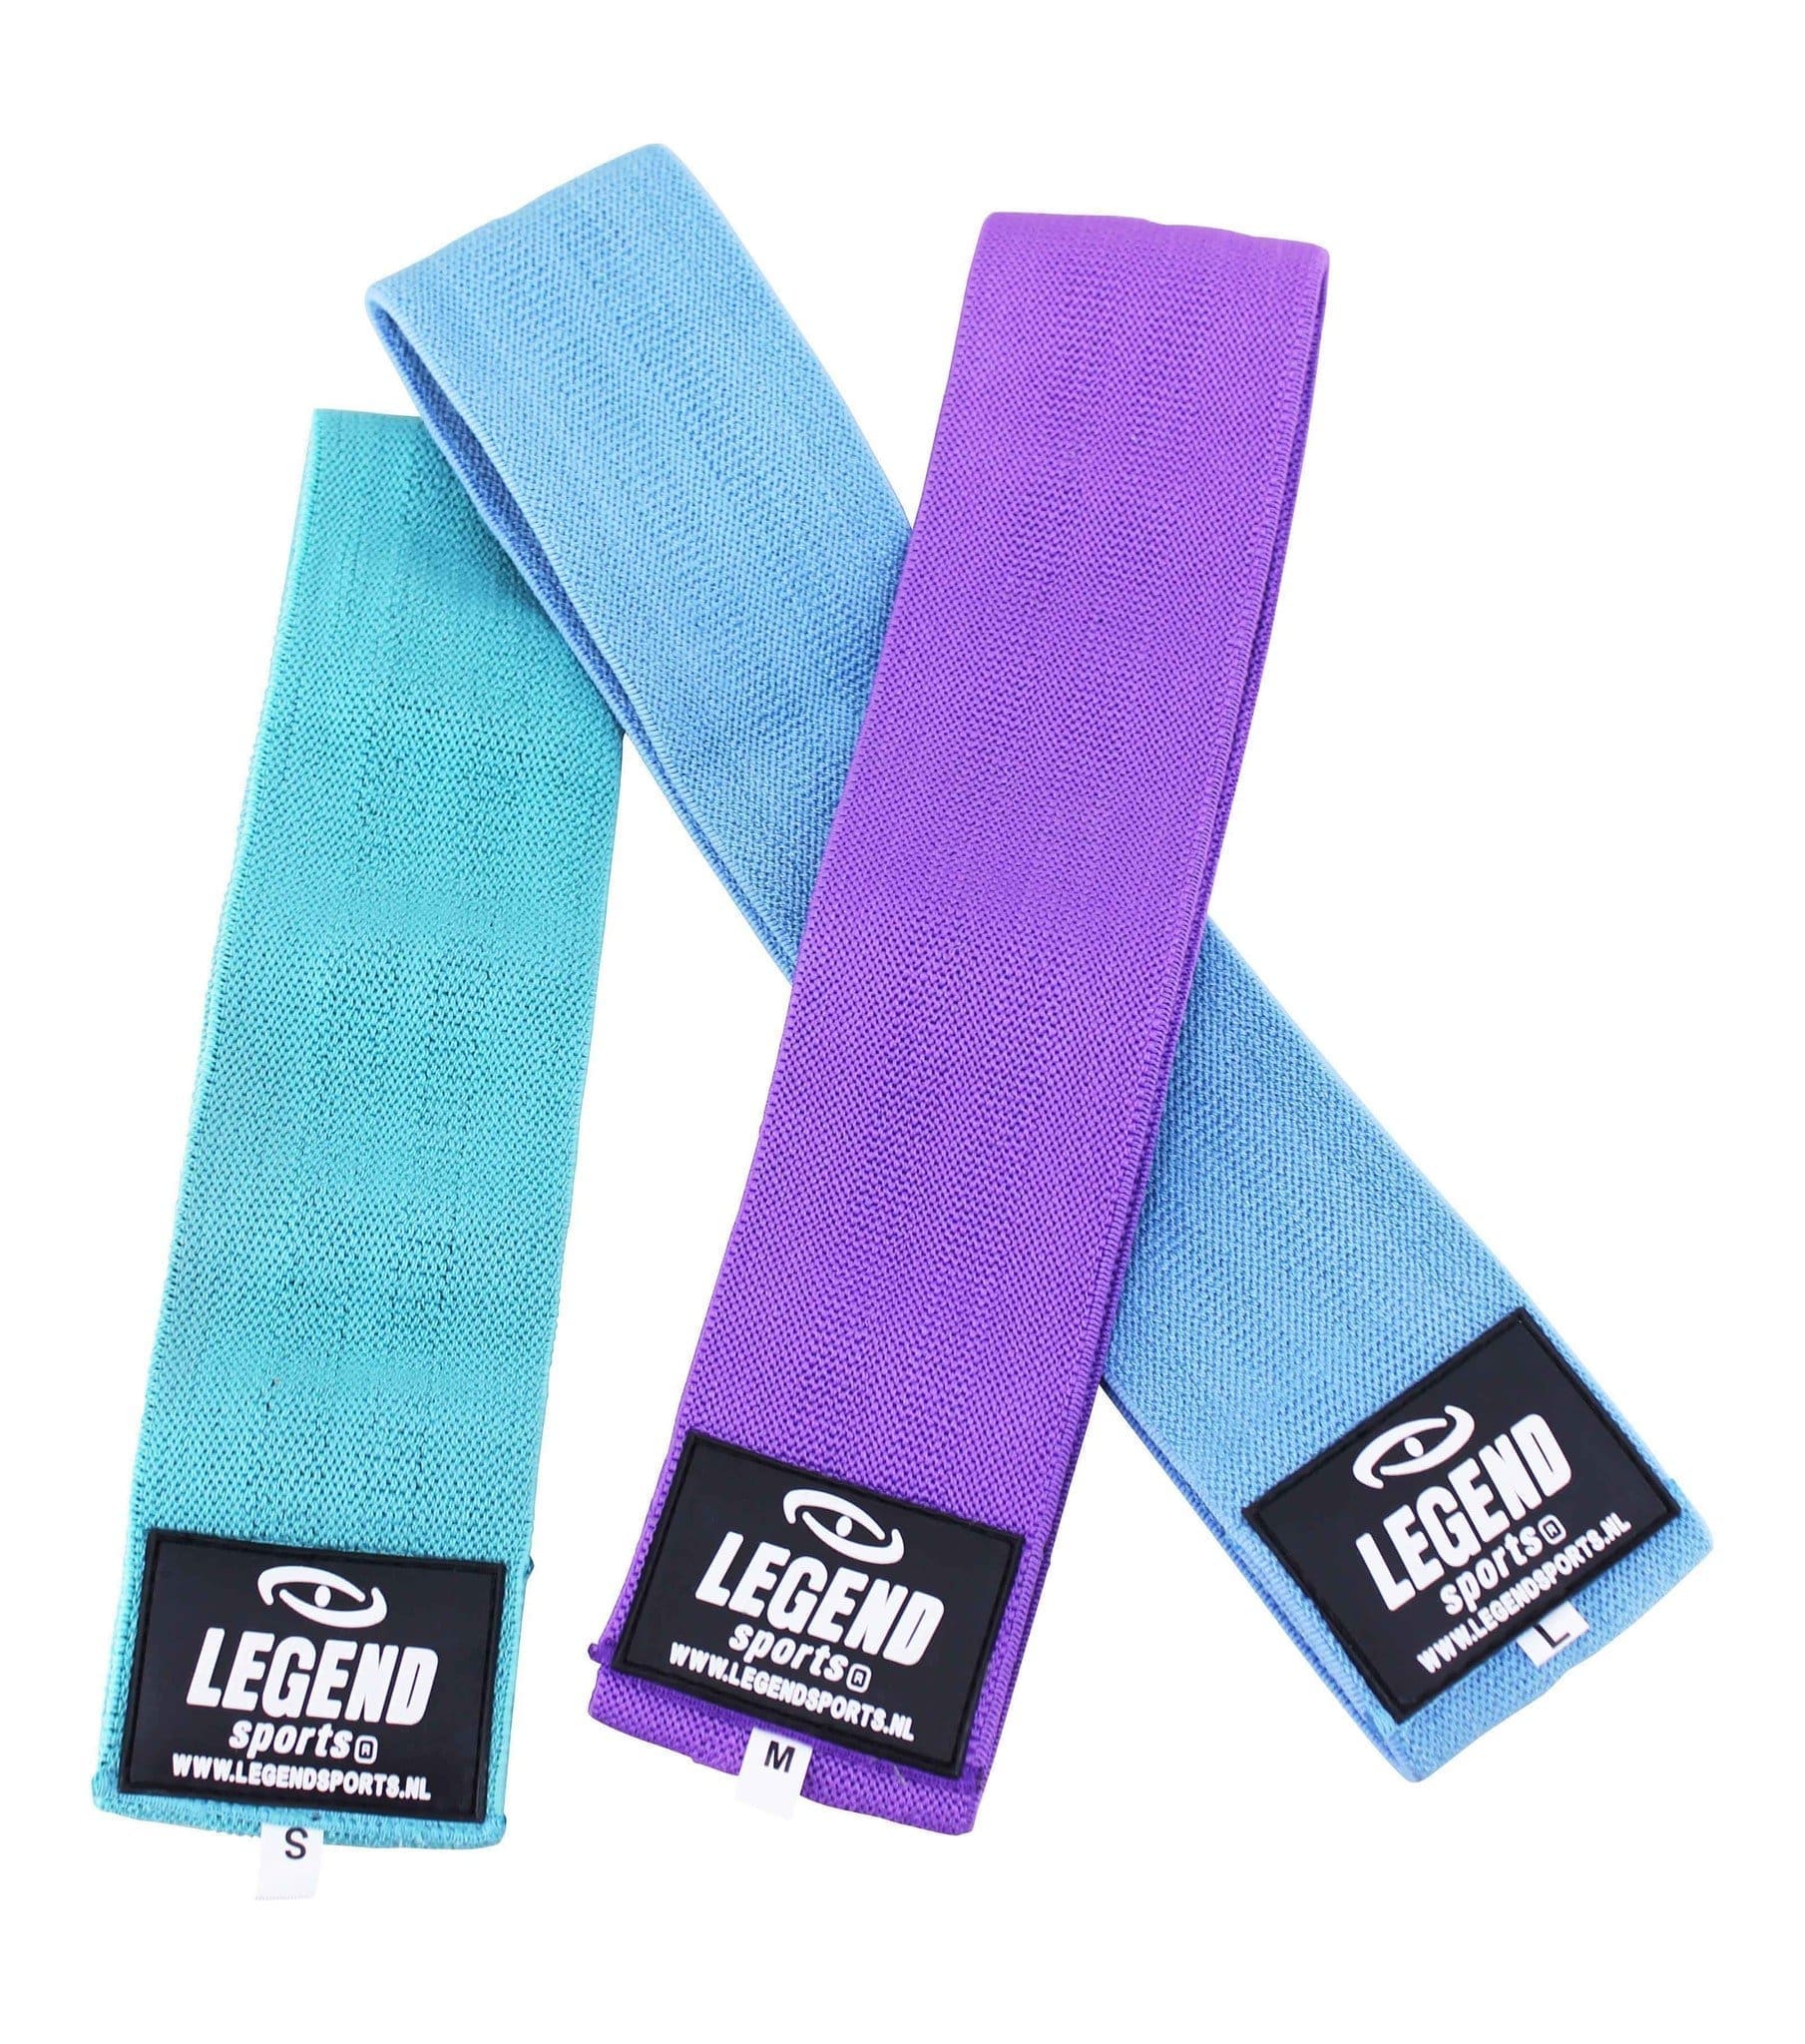 Legend Sports Legend Weerstandsband - Hoogste kwaliteit elastaan - Set van 3 paar - Mint groen, blauw en paars